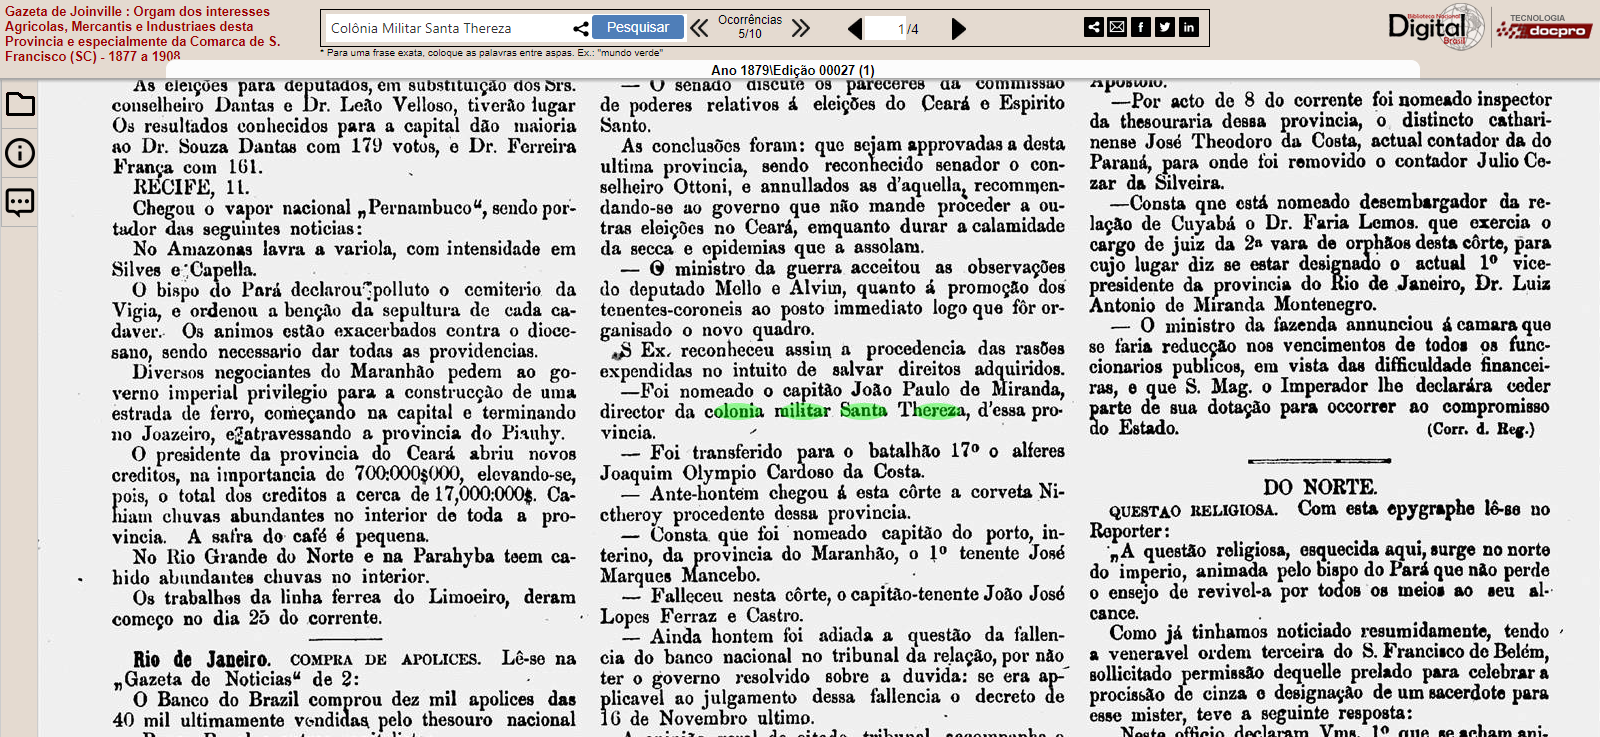 Nomeação diretor Colônia Militar – Gazeta de Joinville 1879 ed. 00027